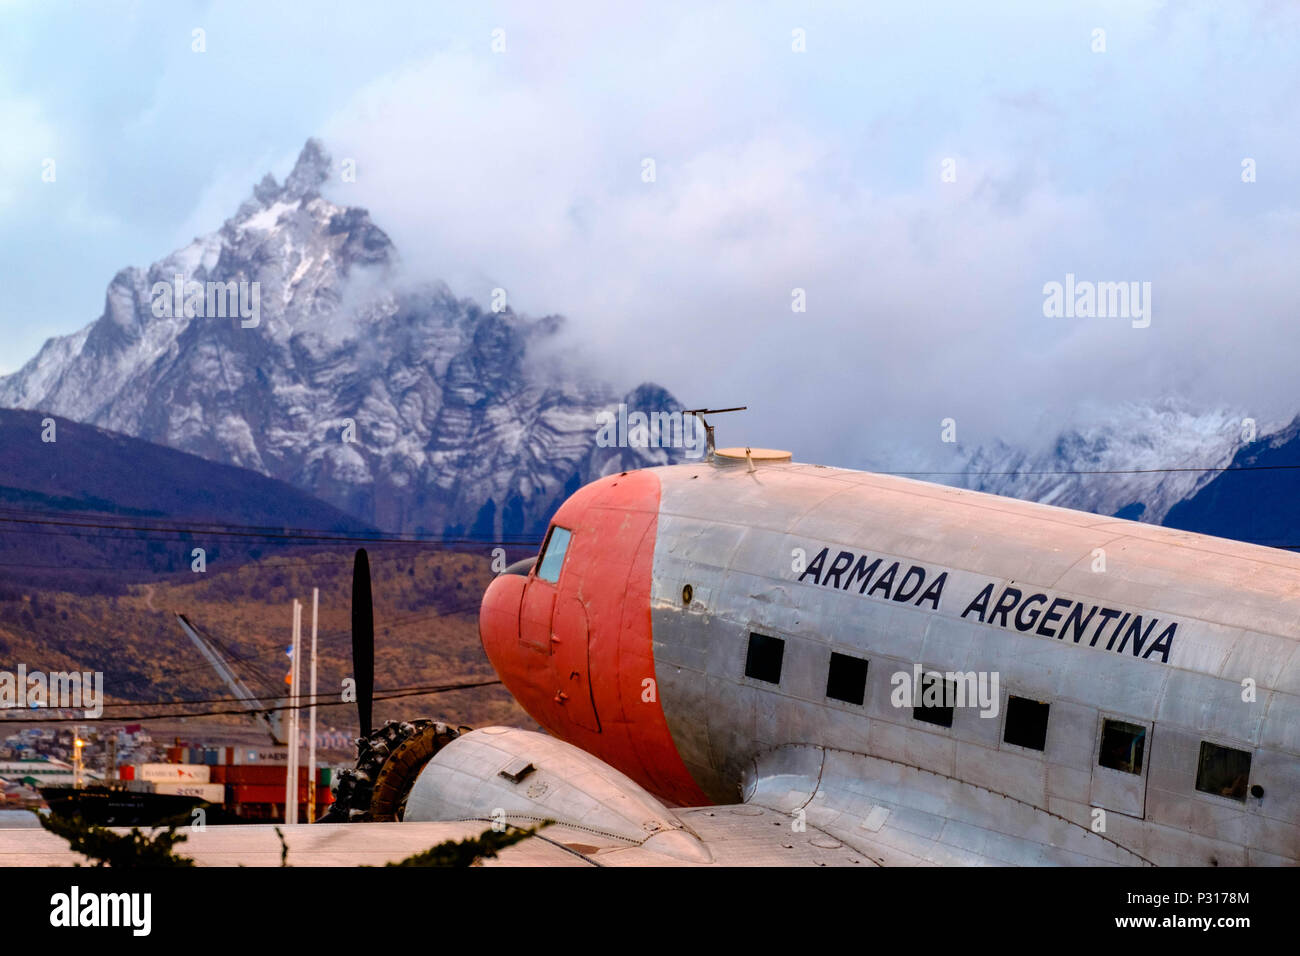 Eine ehemalige argentinische Armee Ebene liegt in der aerobclub von Ushuaia. Jetzt ist es eine touristische Attraktion, mit dem berühmten Monte Olivia als Hintergrund. Stockfoto